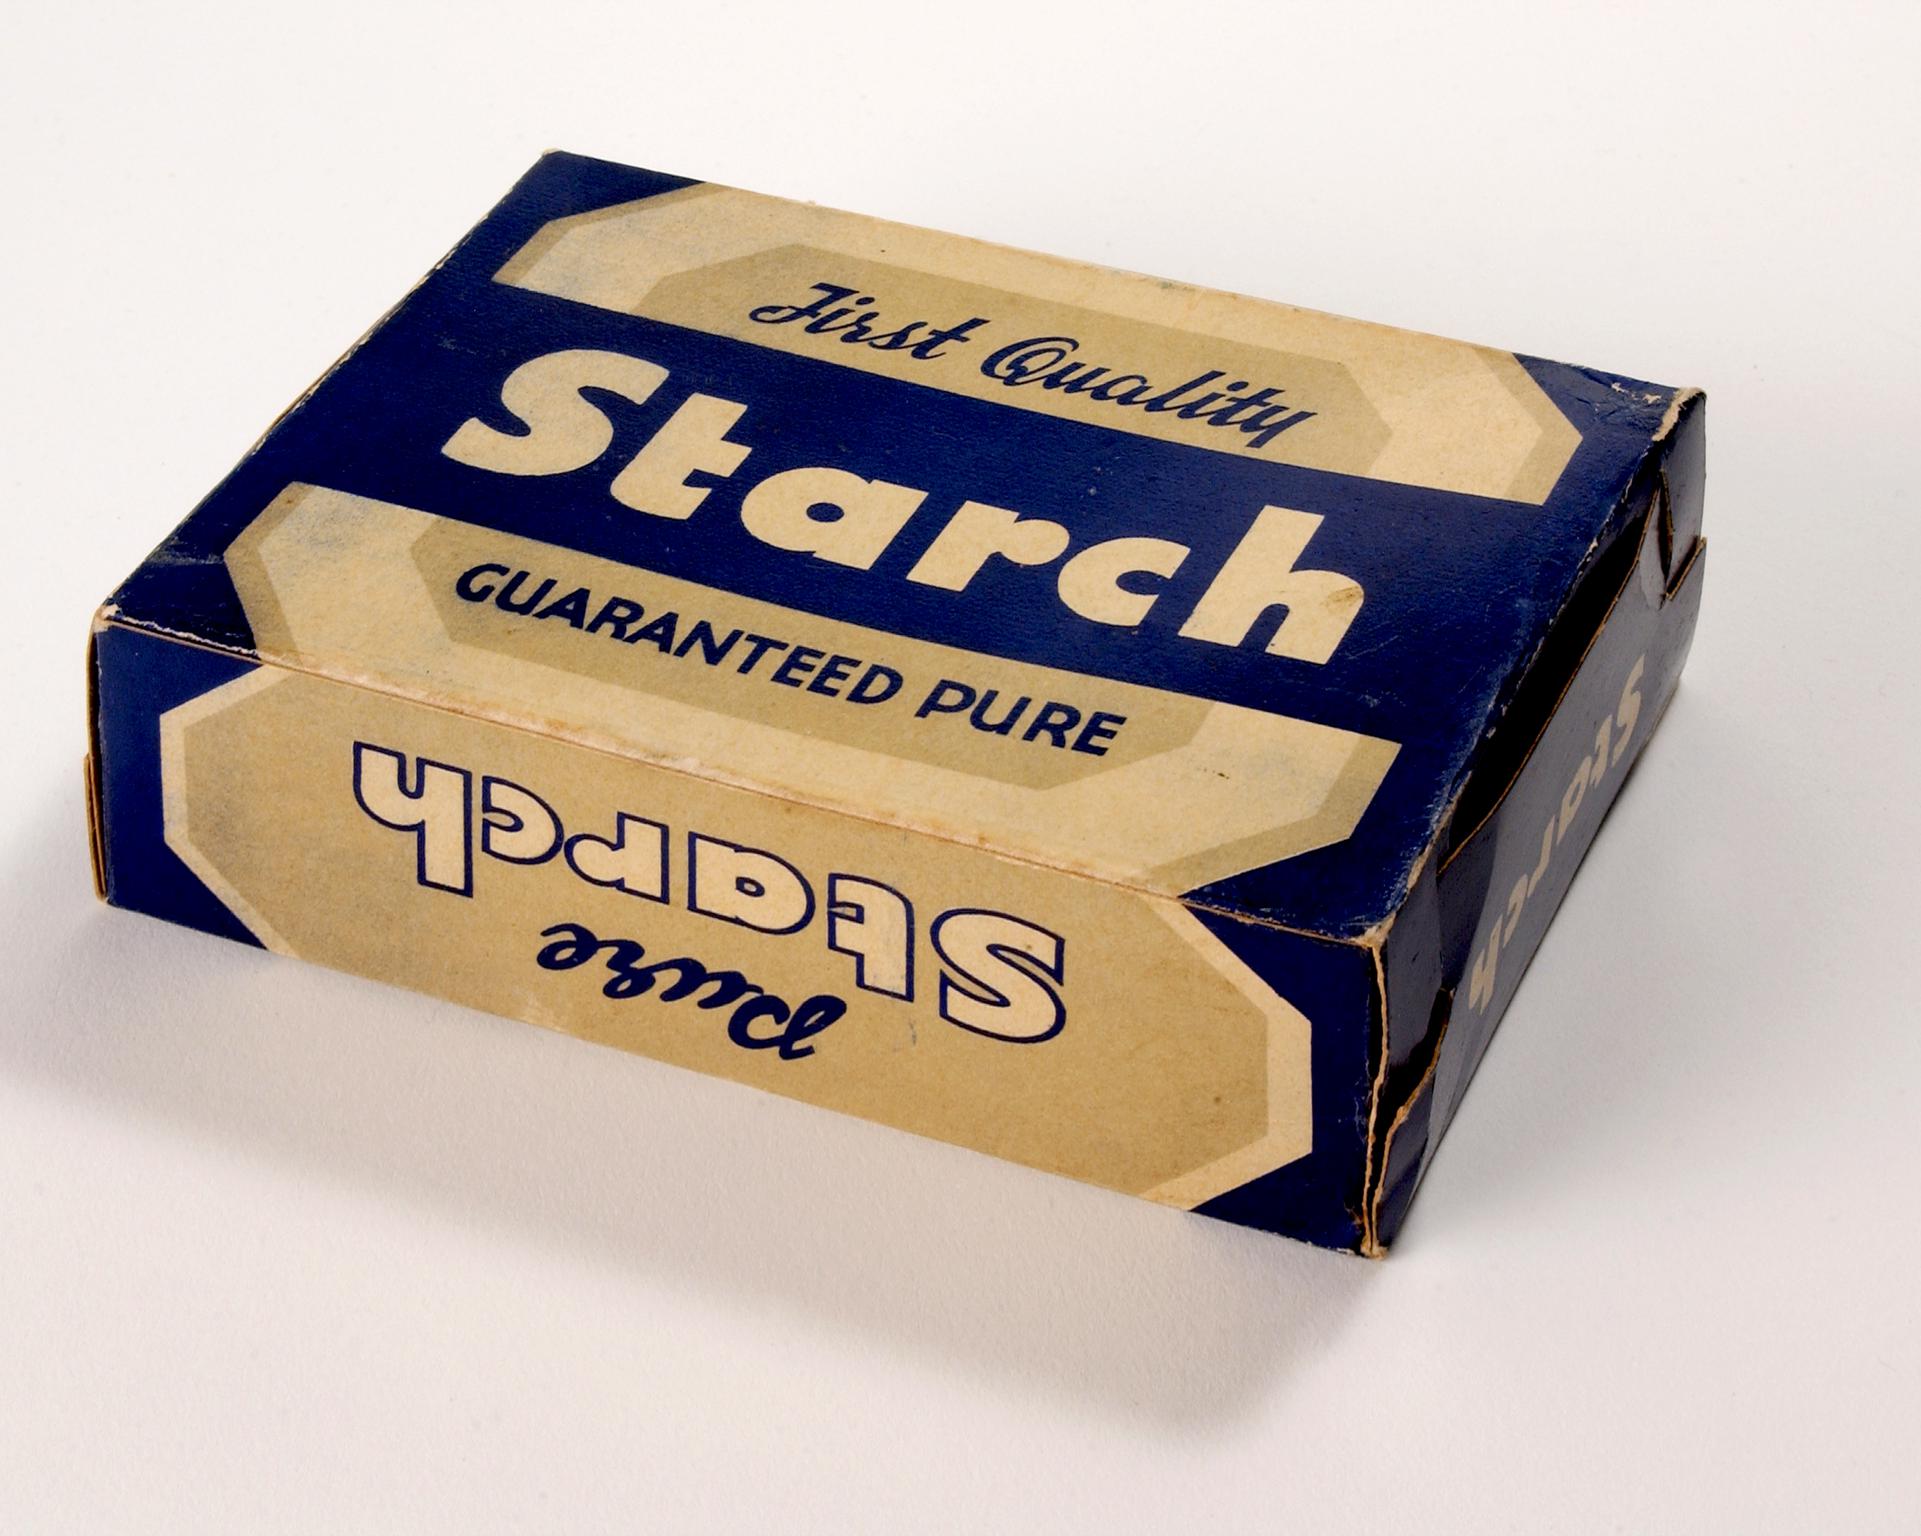 Bean's Starch carton